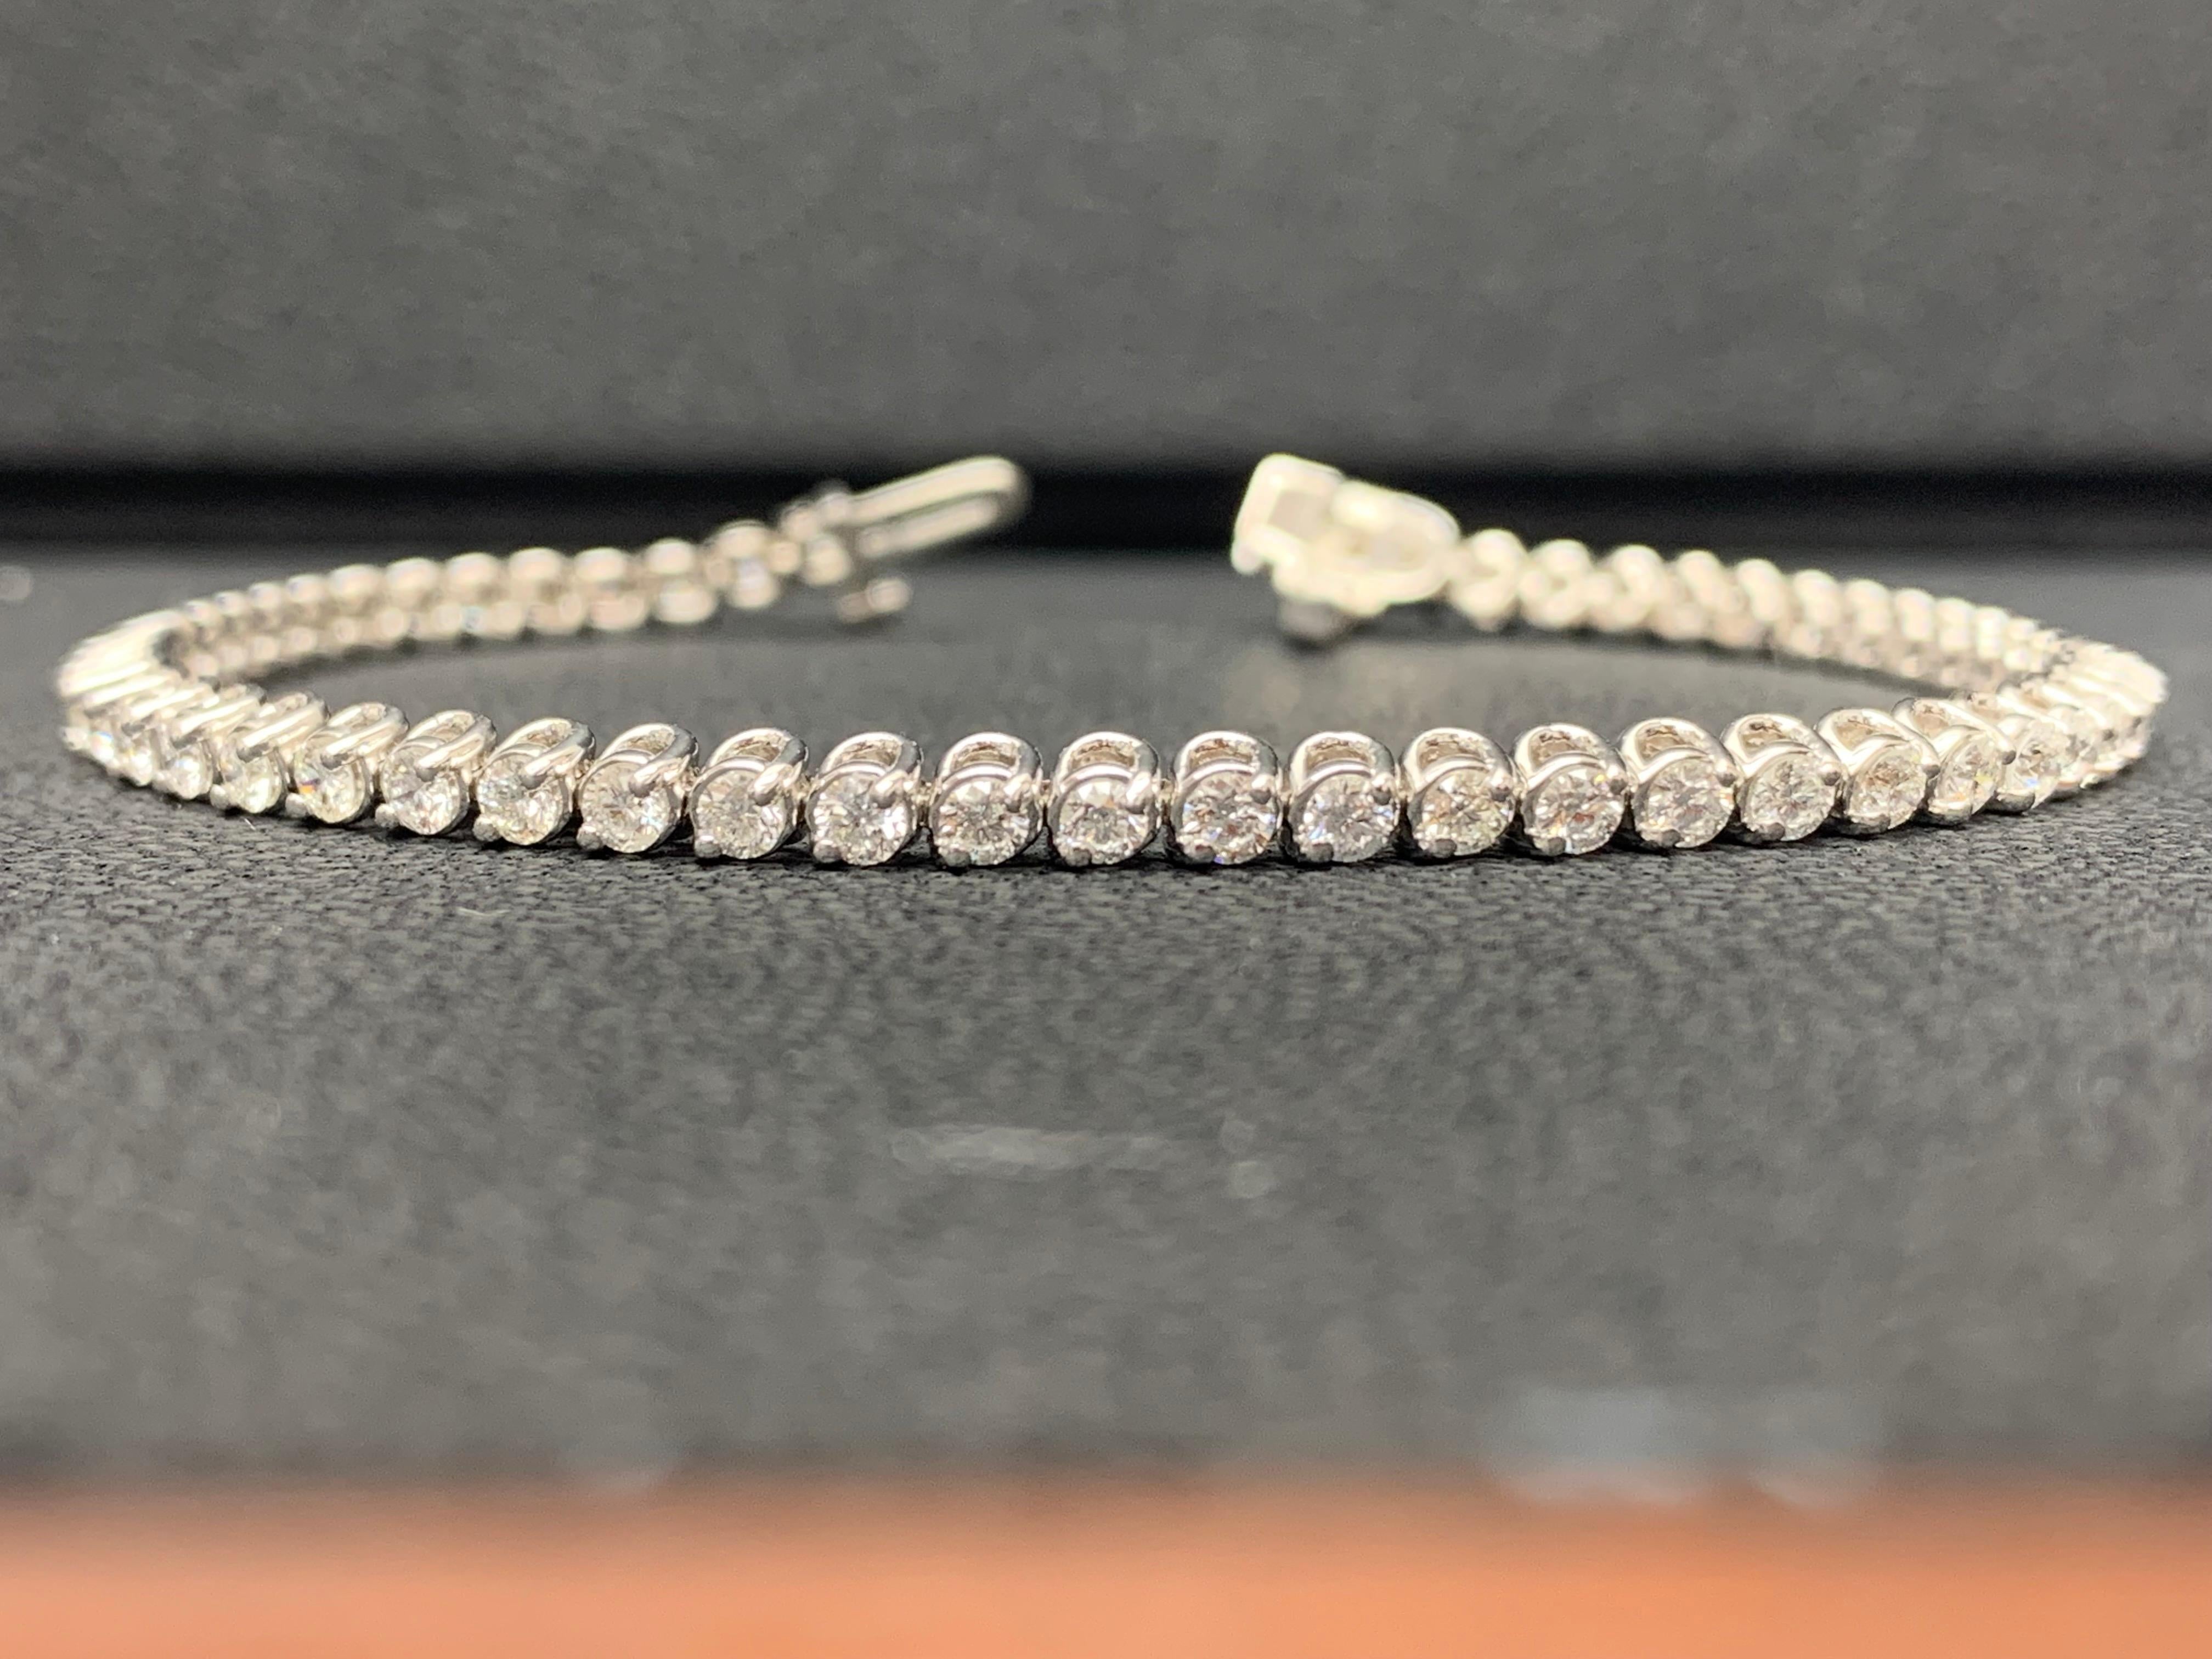 Un bracelet tennis brillant mettant en valeur une rangée de diamants ronds et brillants, sertis dans une monture à lunette en or blanc 14K. Les diamants pèsent 2,92 carats au total.
Tous les diamants sont de couleur GH et de pureté SI1.
Disponible